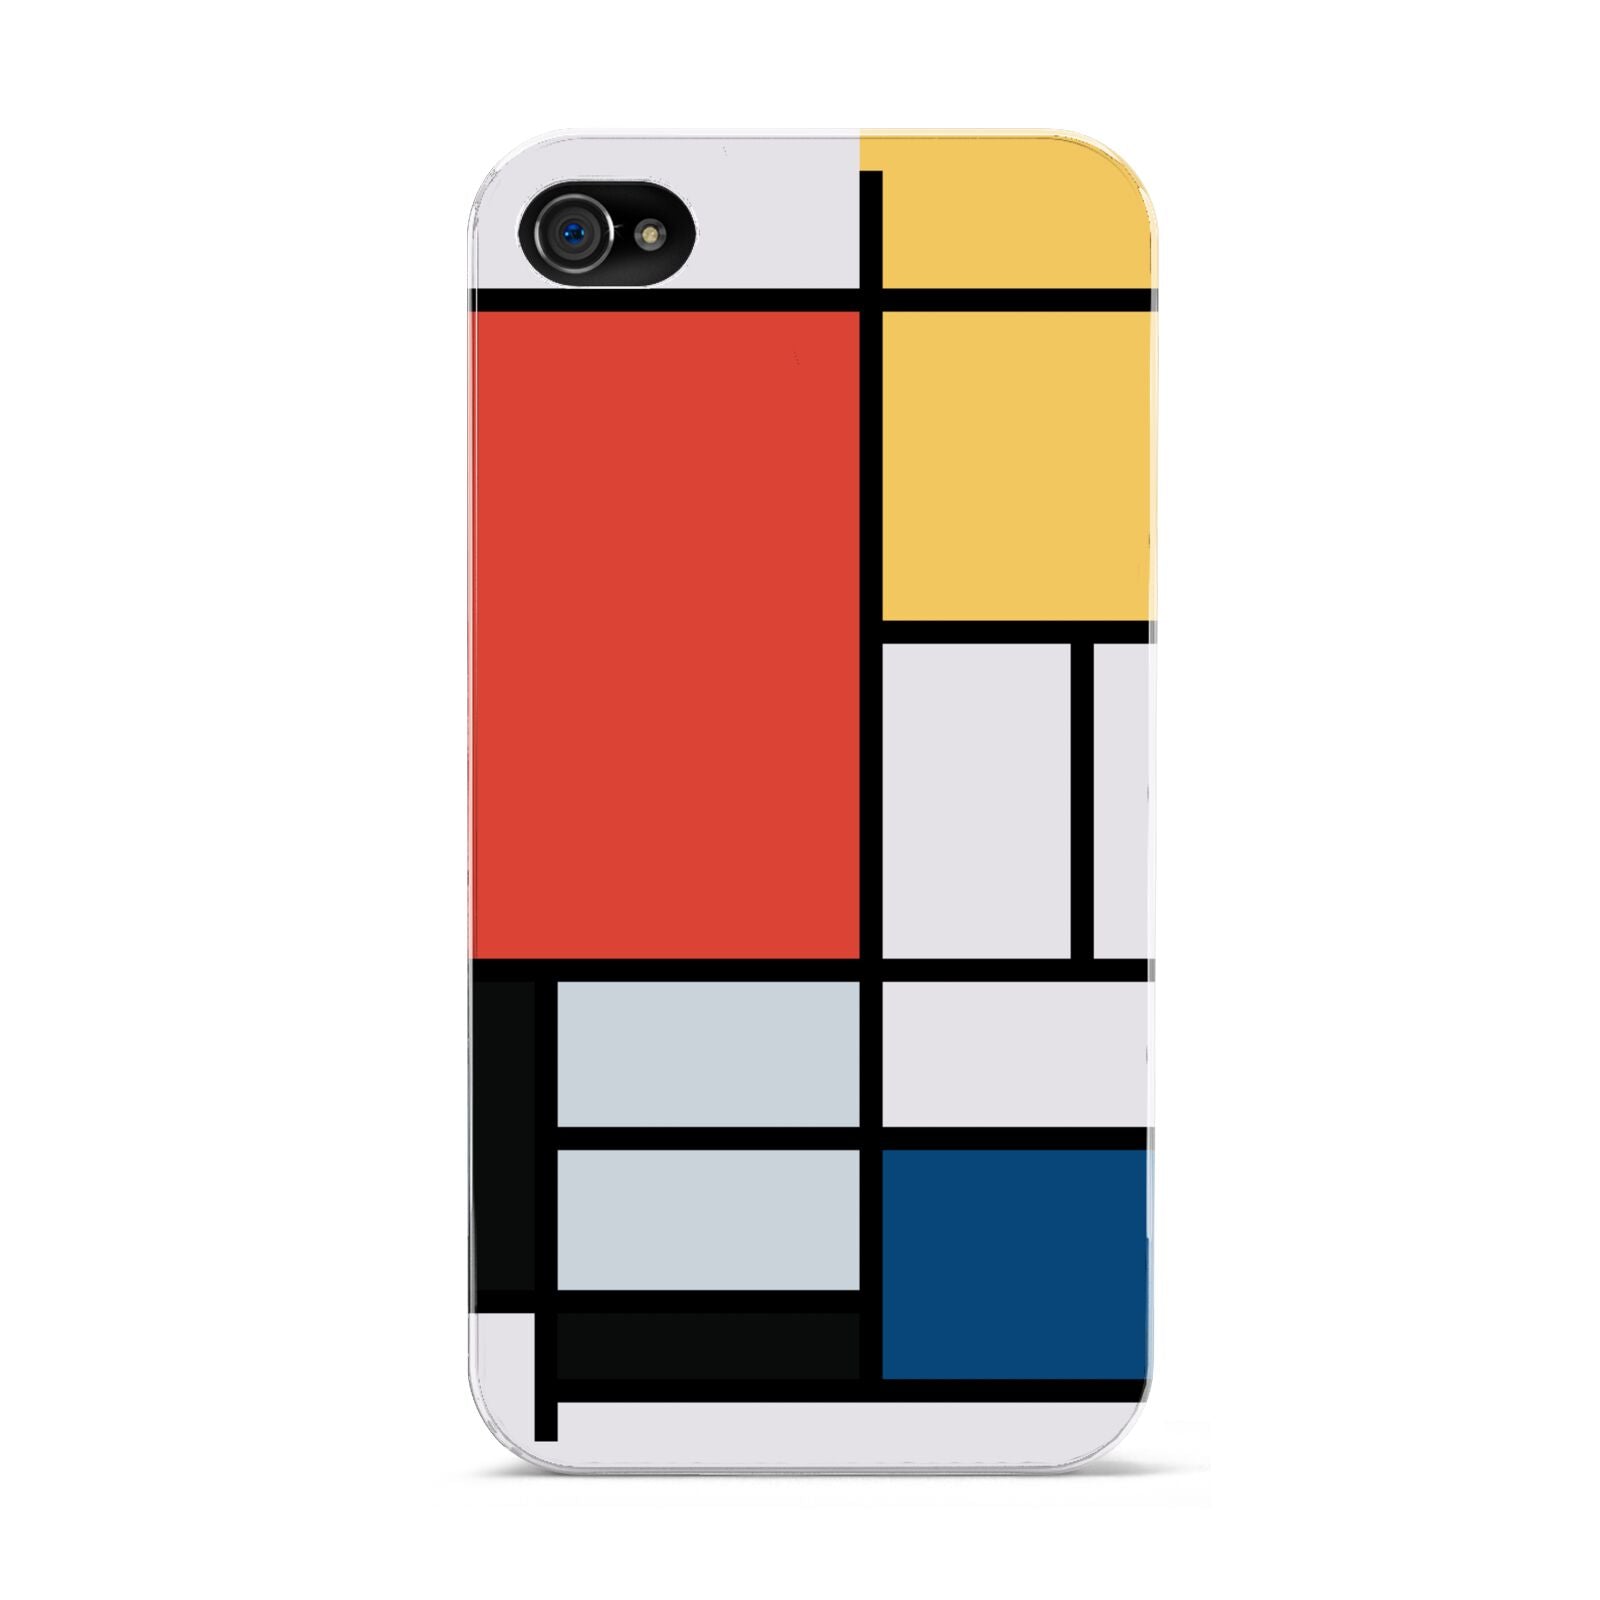 Piet Mondrian Composition Apple iPhone 4s Case